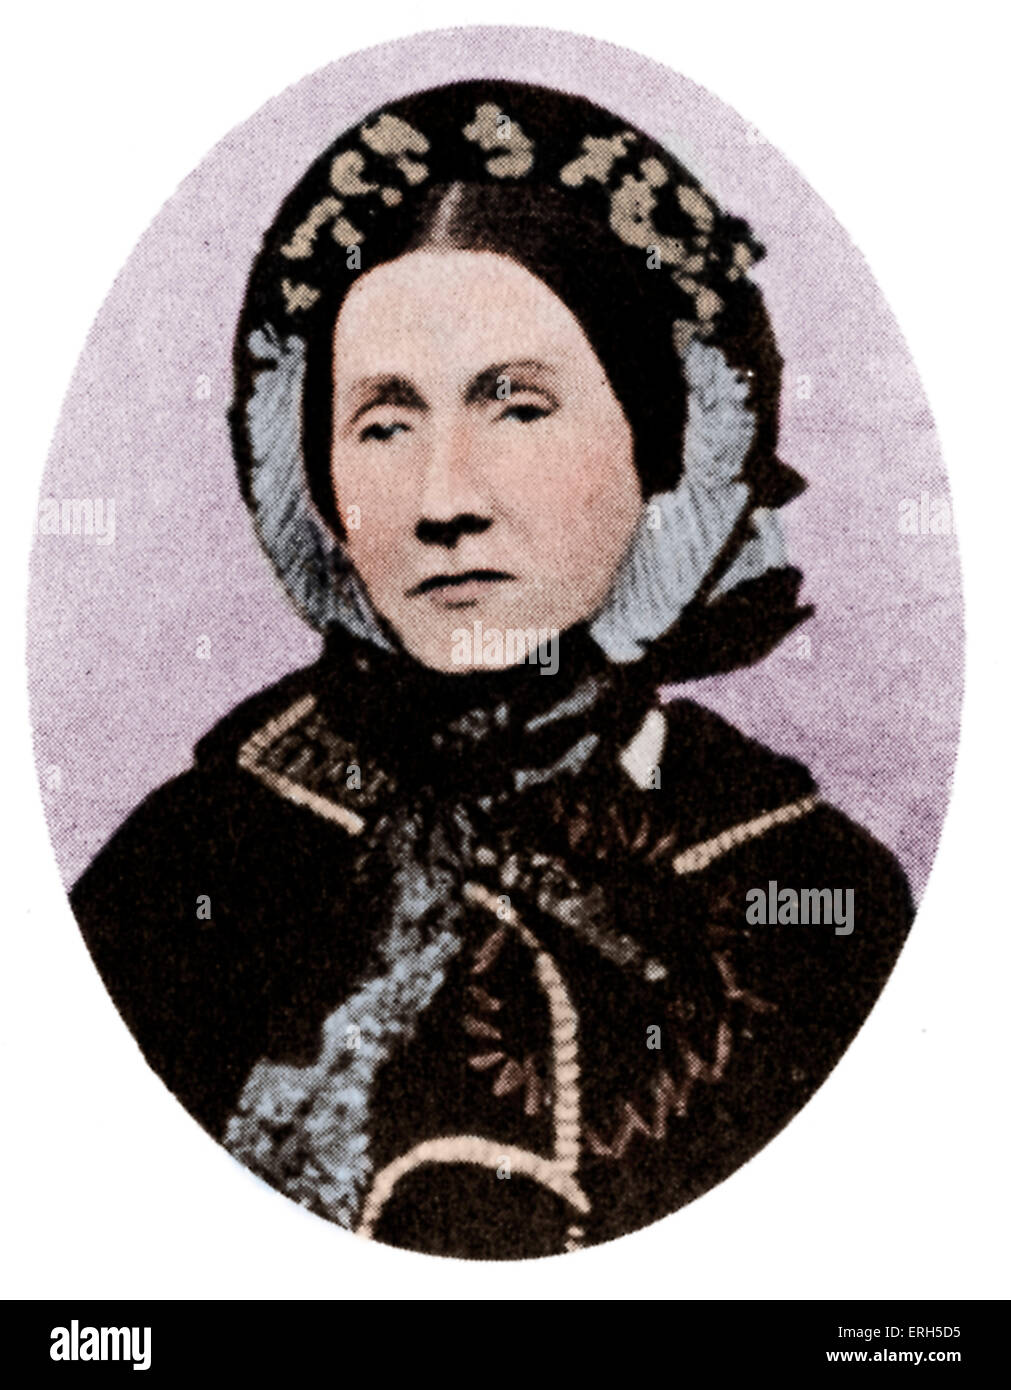 Julia Ward Howe, poète et abolitionniste américain. 27 mai1819 - 17 octobre 1910. Version colorisée. Banque D'Images